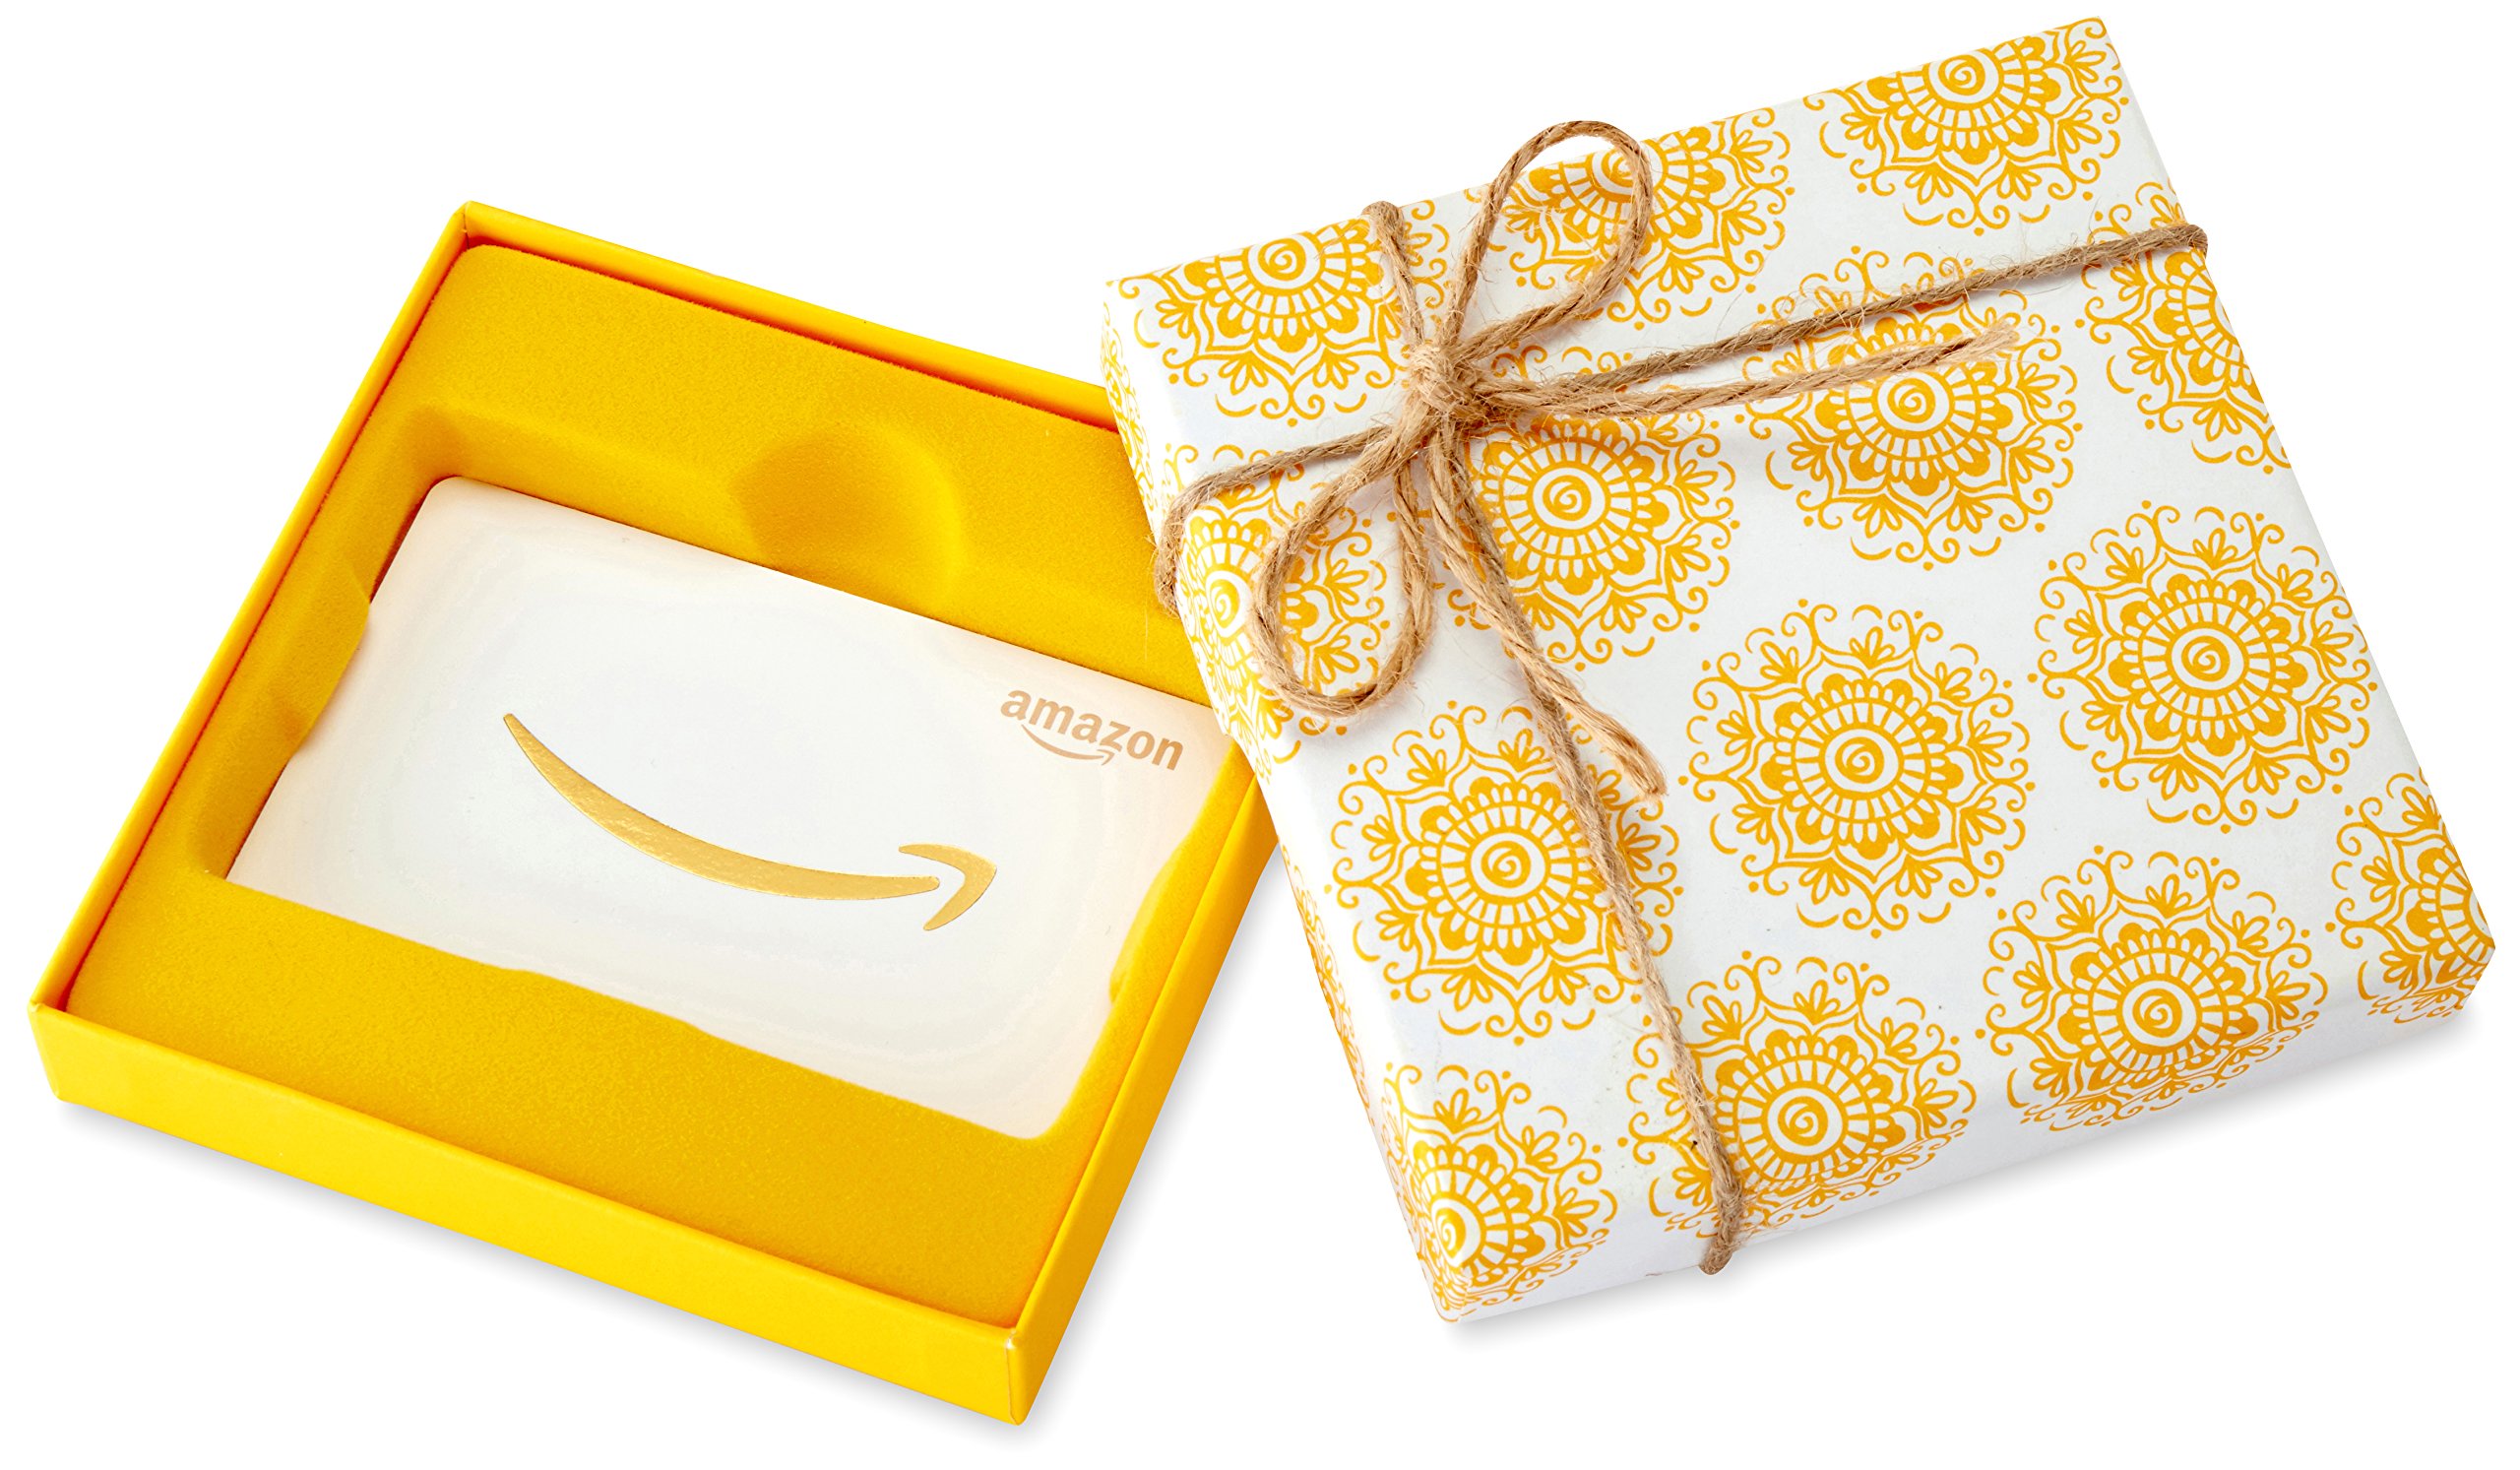 Book Cover Amazon.com Gift Card in a Yellow Swirl Box 0 Yellow Swirl Box